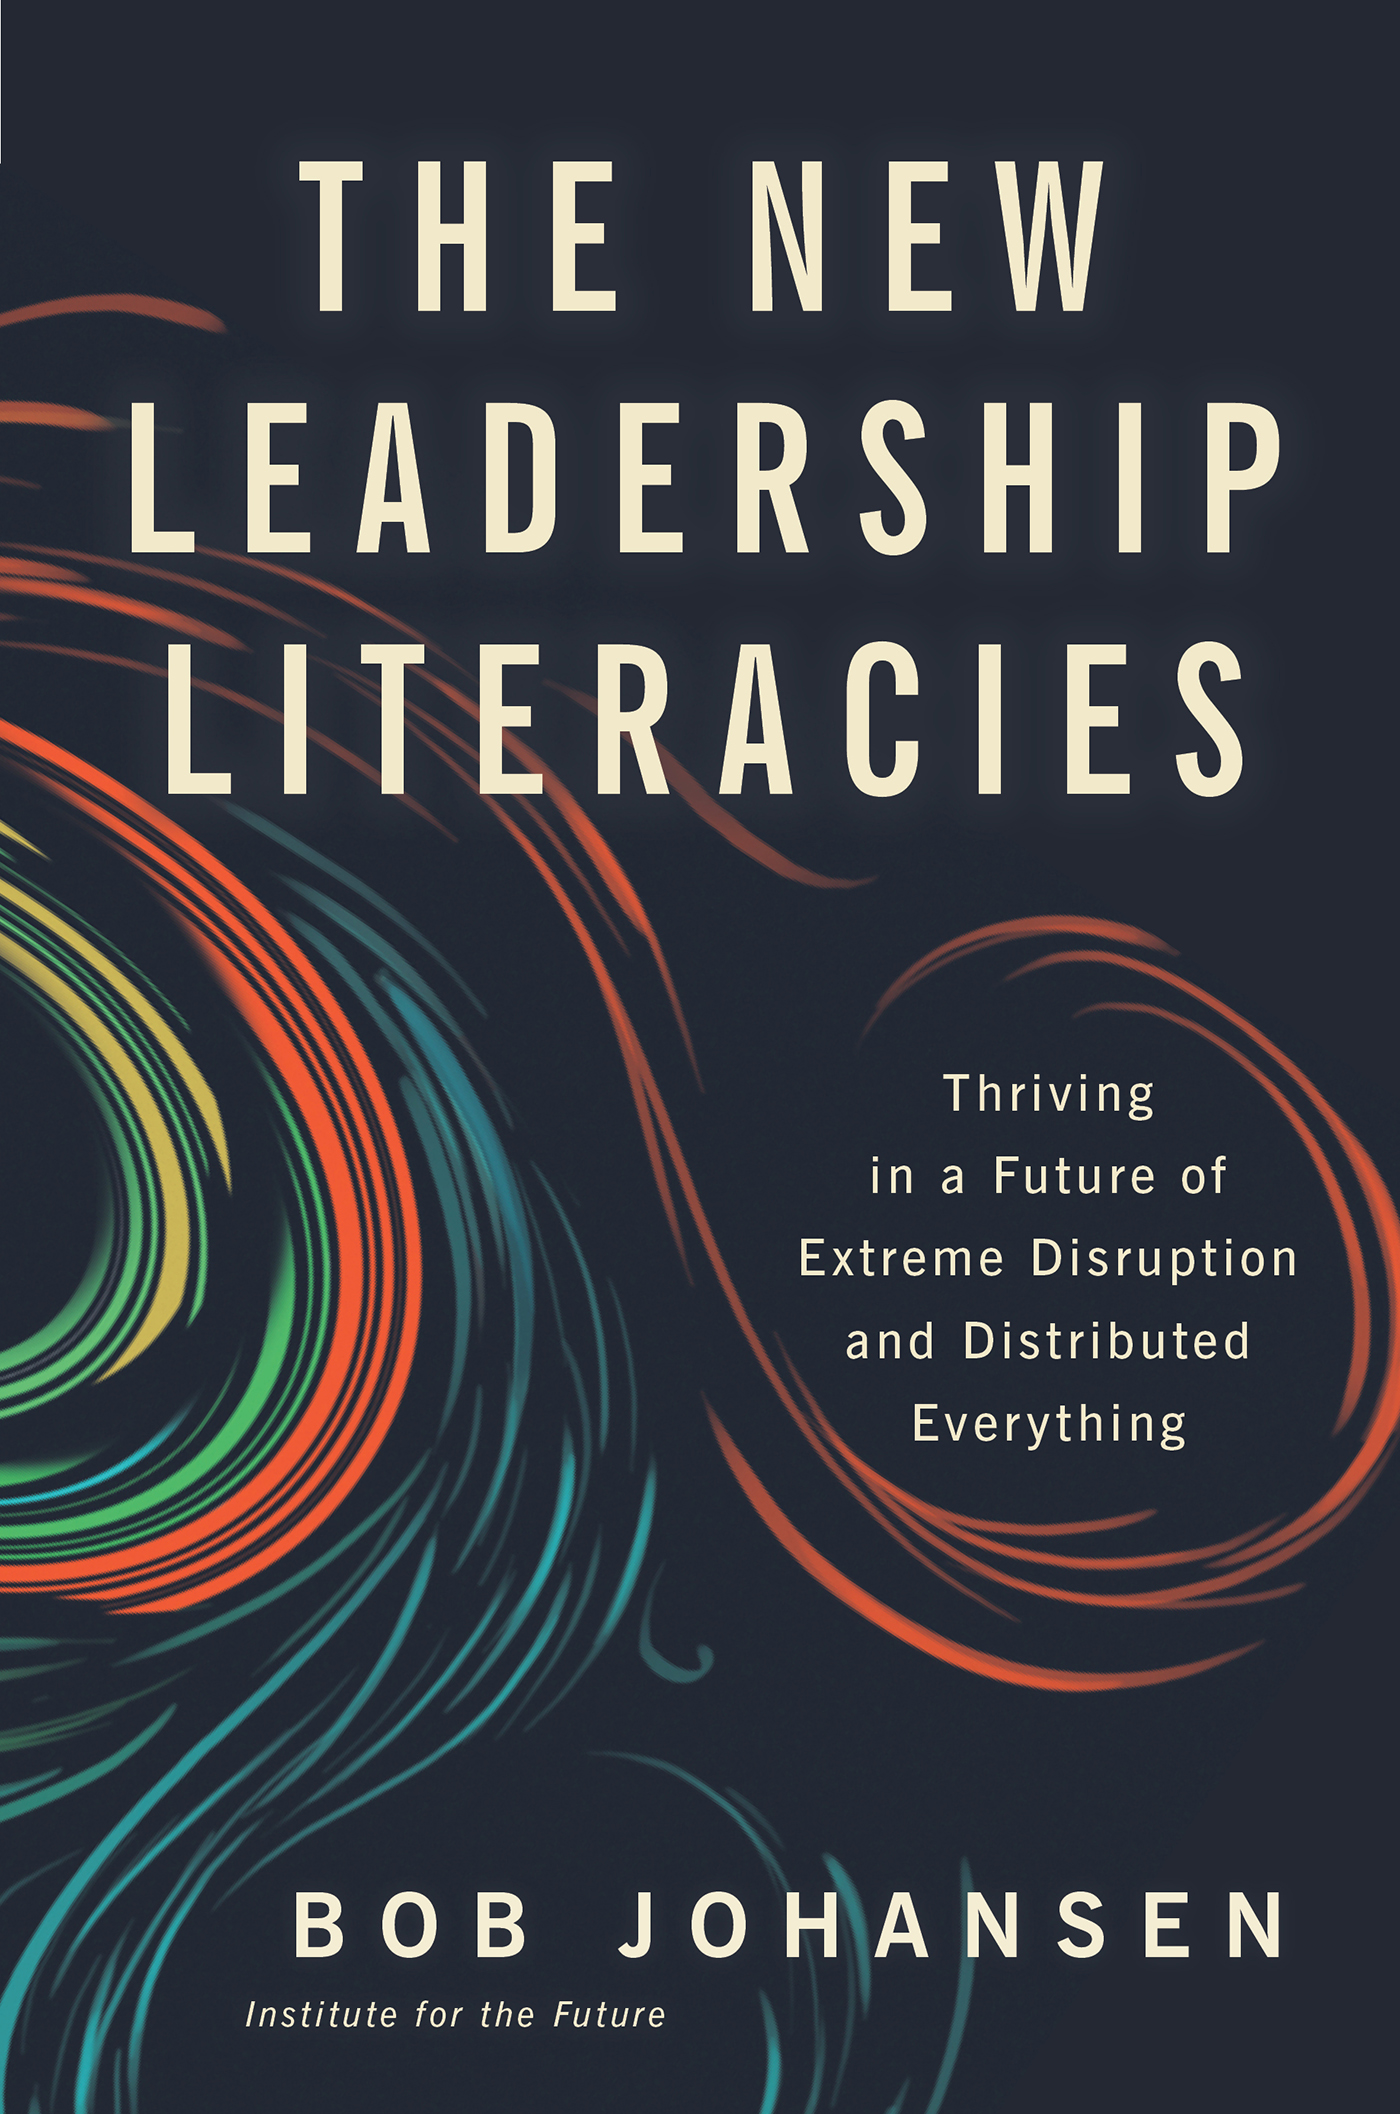 The New Leadership Literacies, by Bob Johansen (Berrett-Koehler Publishers, September 2017)